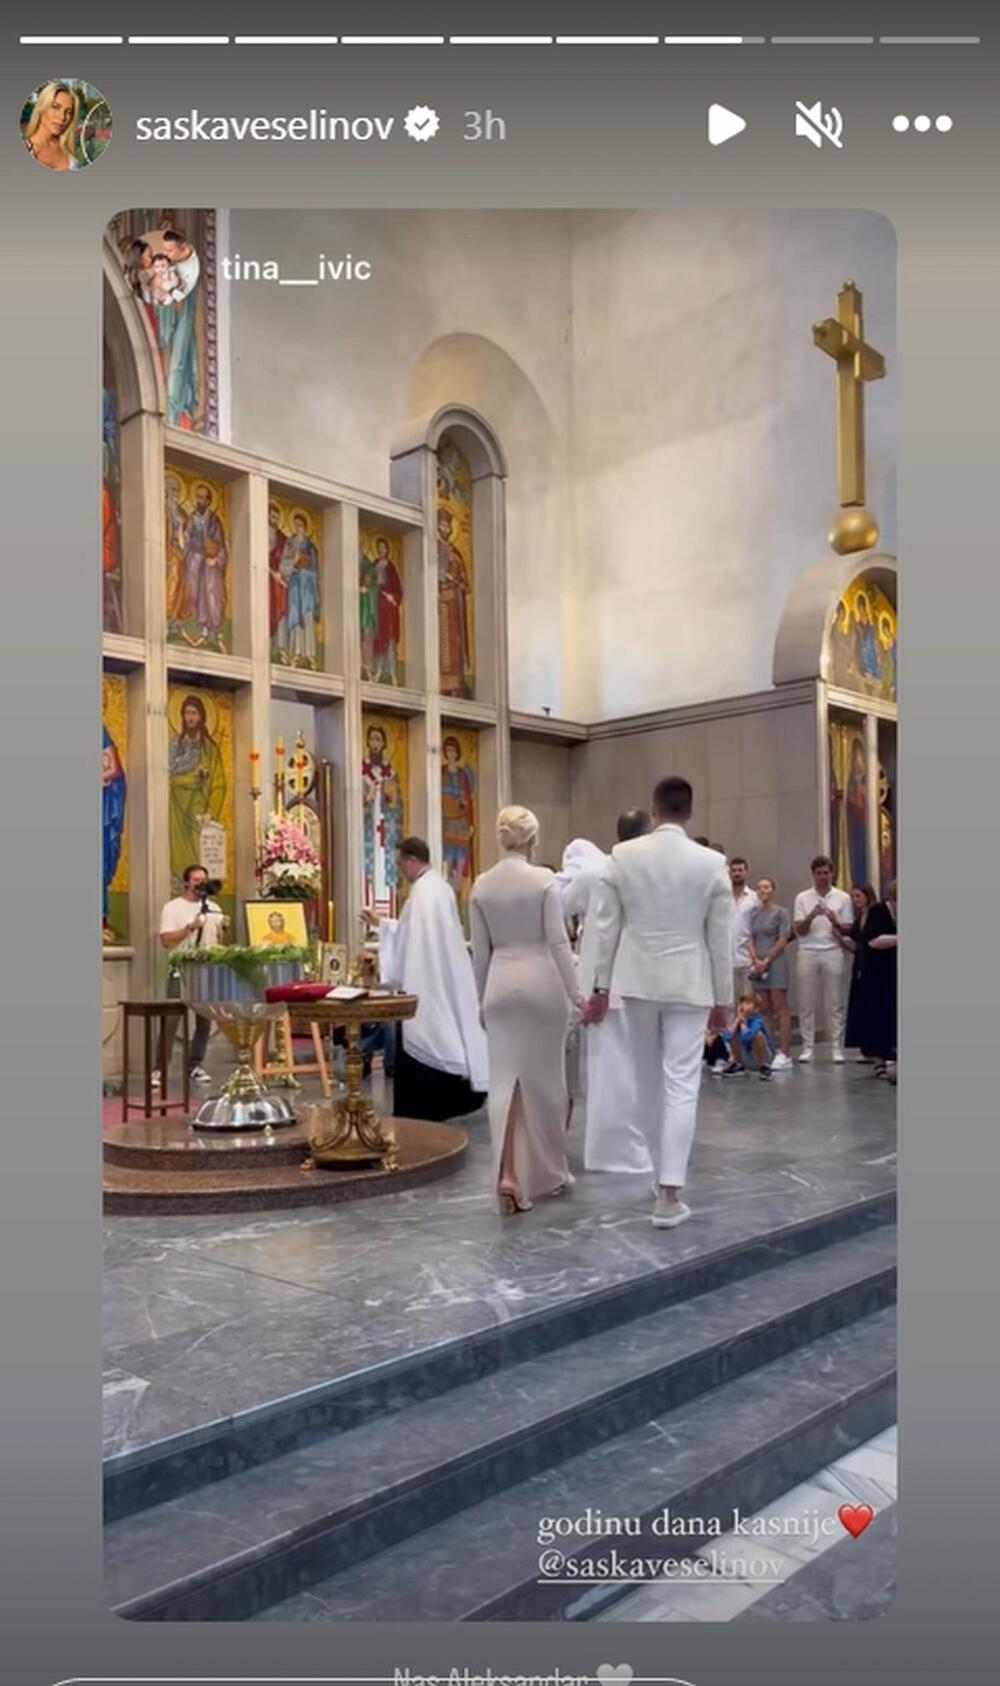 <p>Saška i Đorđe Đoković krstili su sina Aleksandra na godišnjicu braka, a mlada mama blistala je u divnoj haljini!</p>